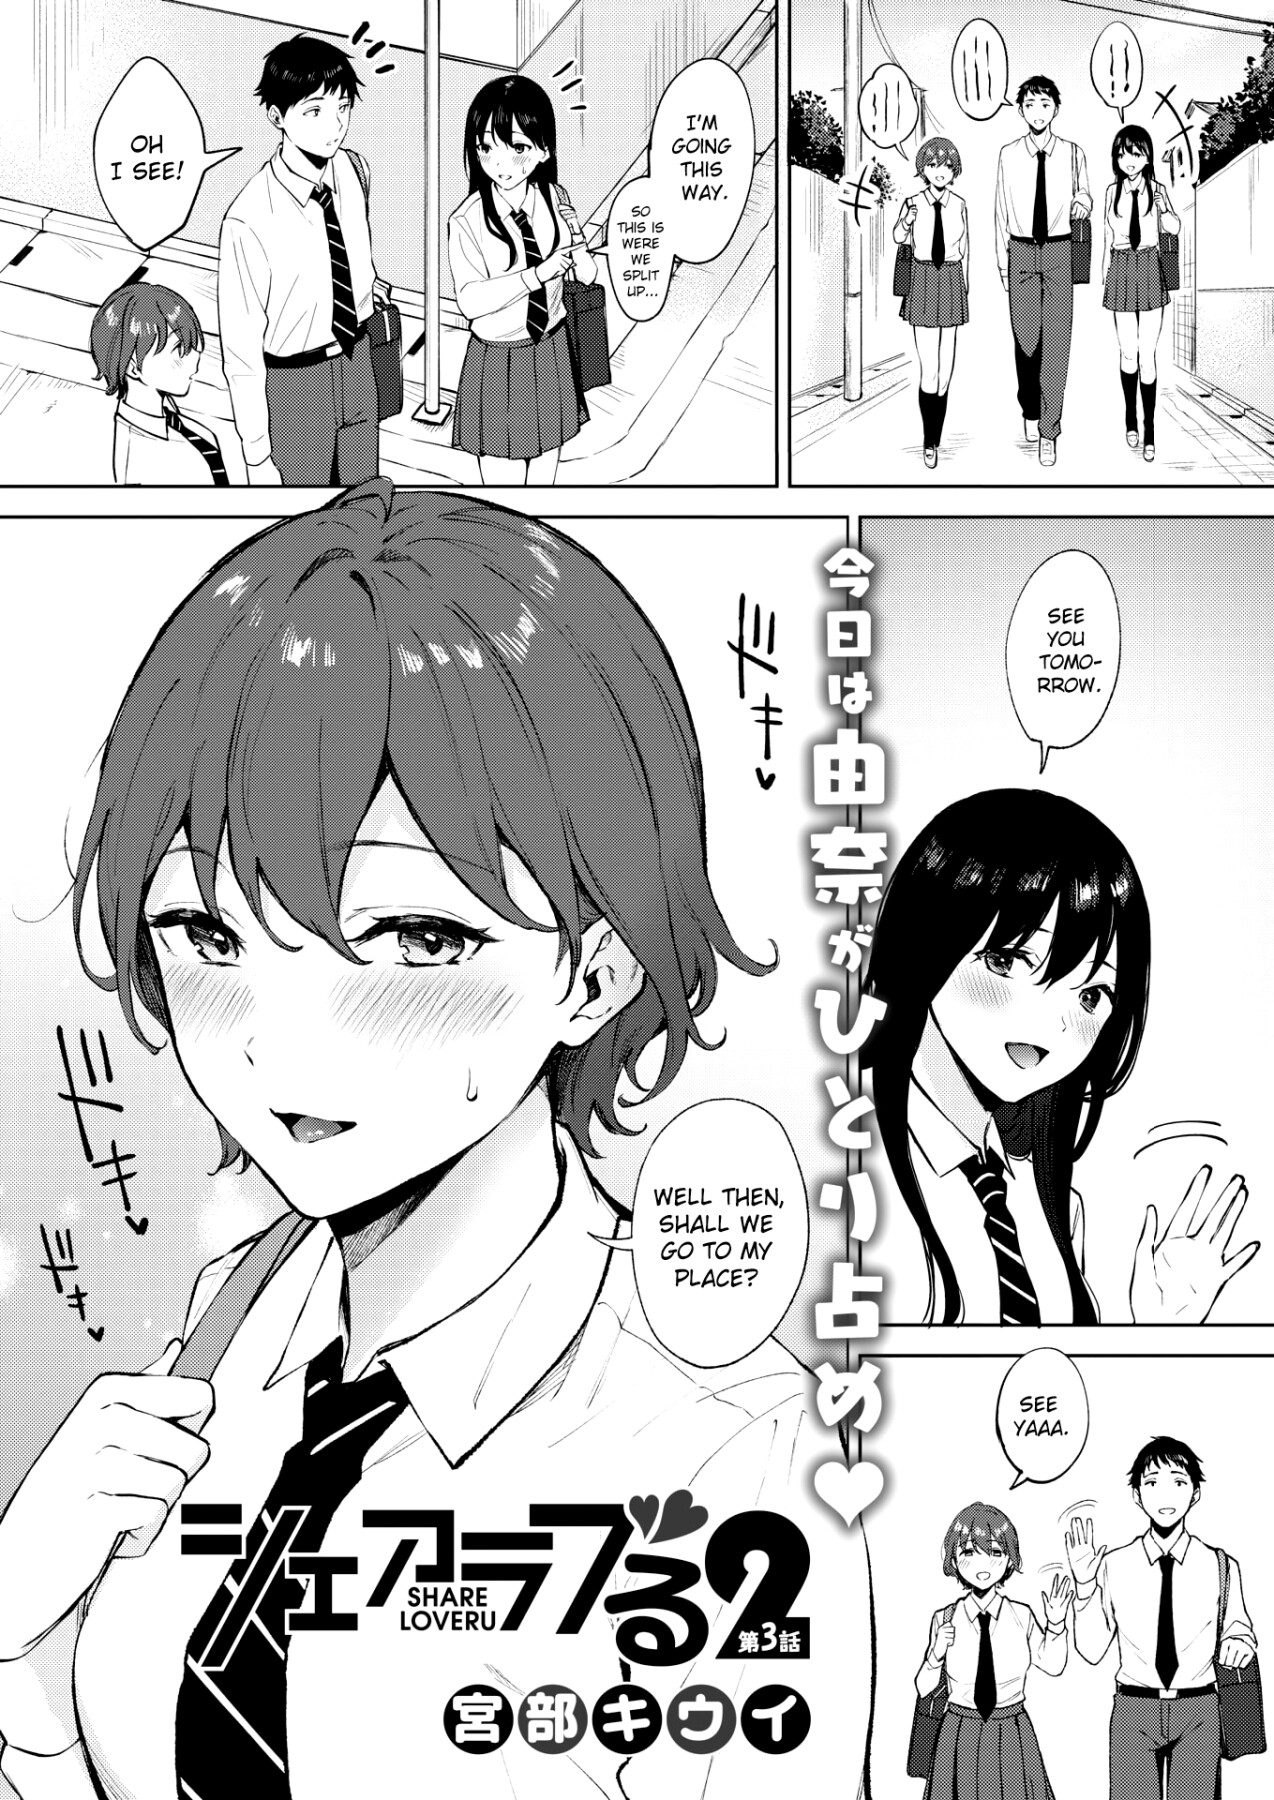 Hentai Manga Comic-Share Loveru 2-Chapter 3-1